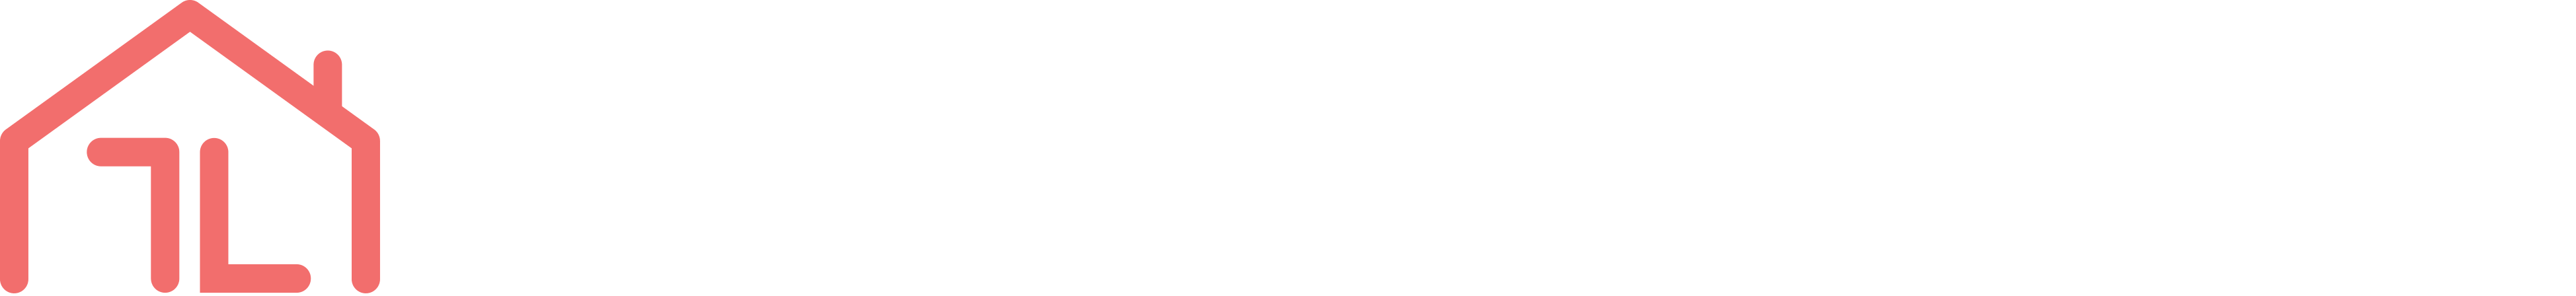 Trion Living logo (light)